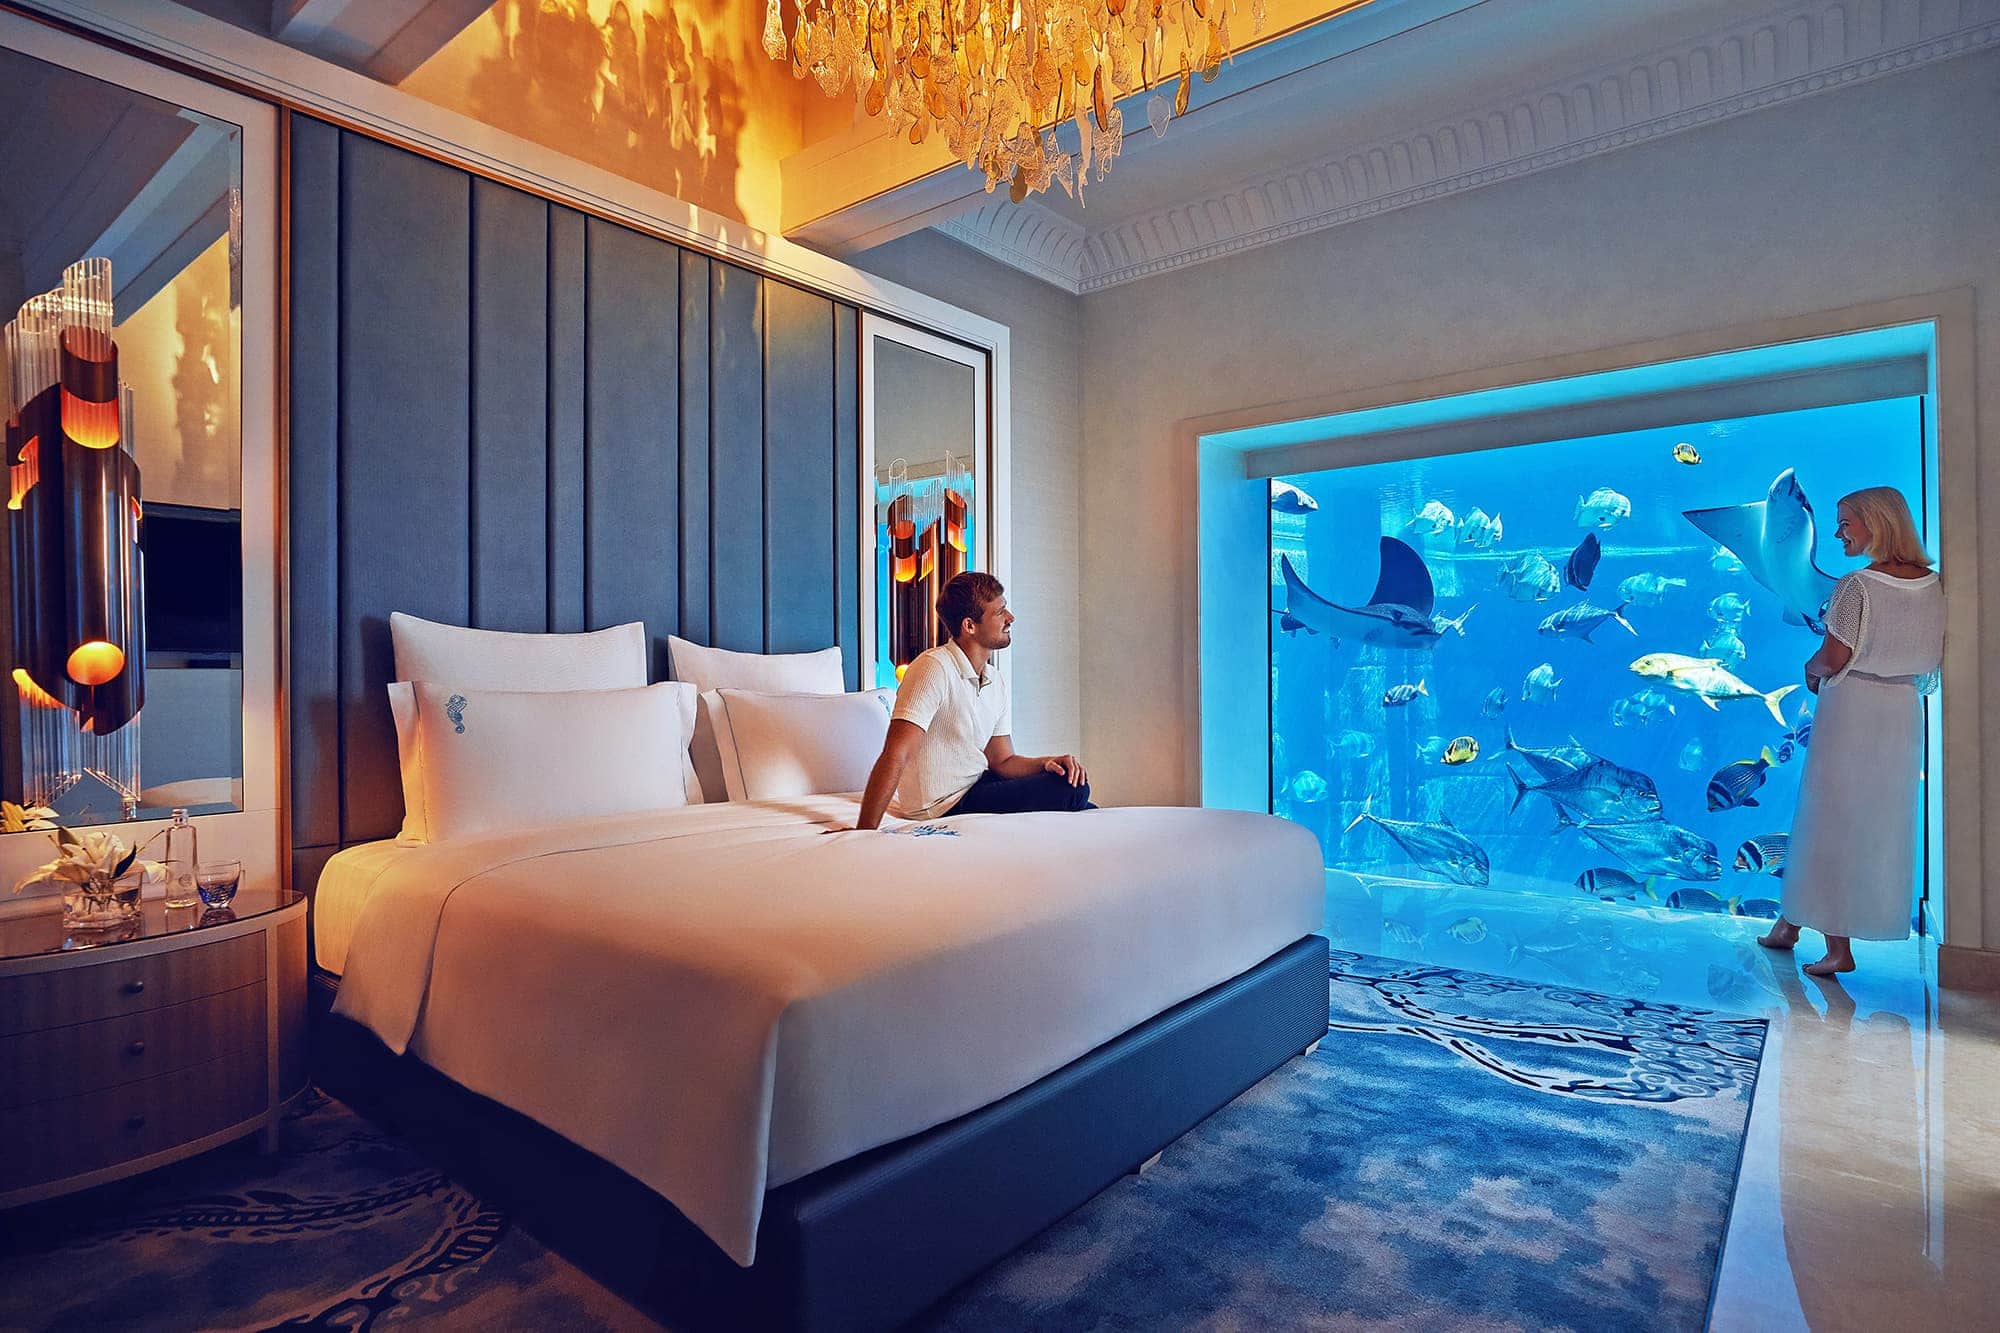 Melhores hotéis em Dubai para uma escala | Visite Dubai